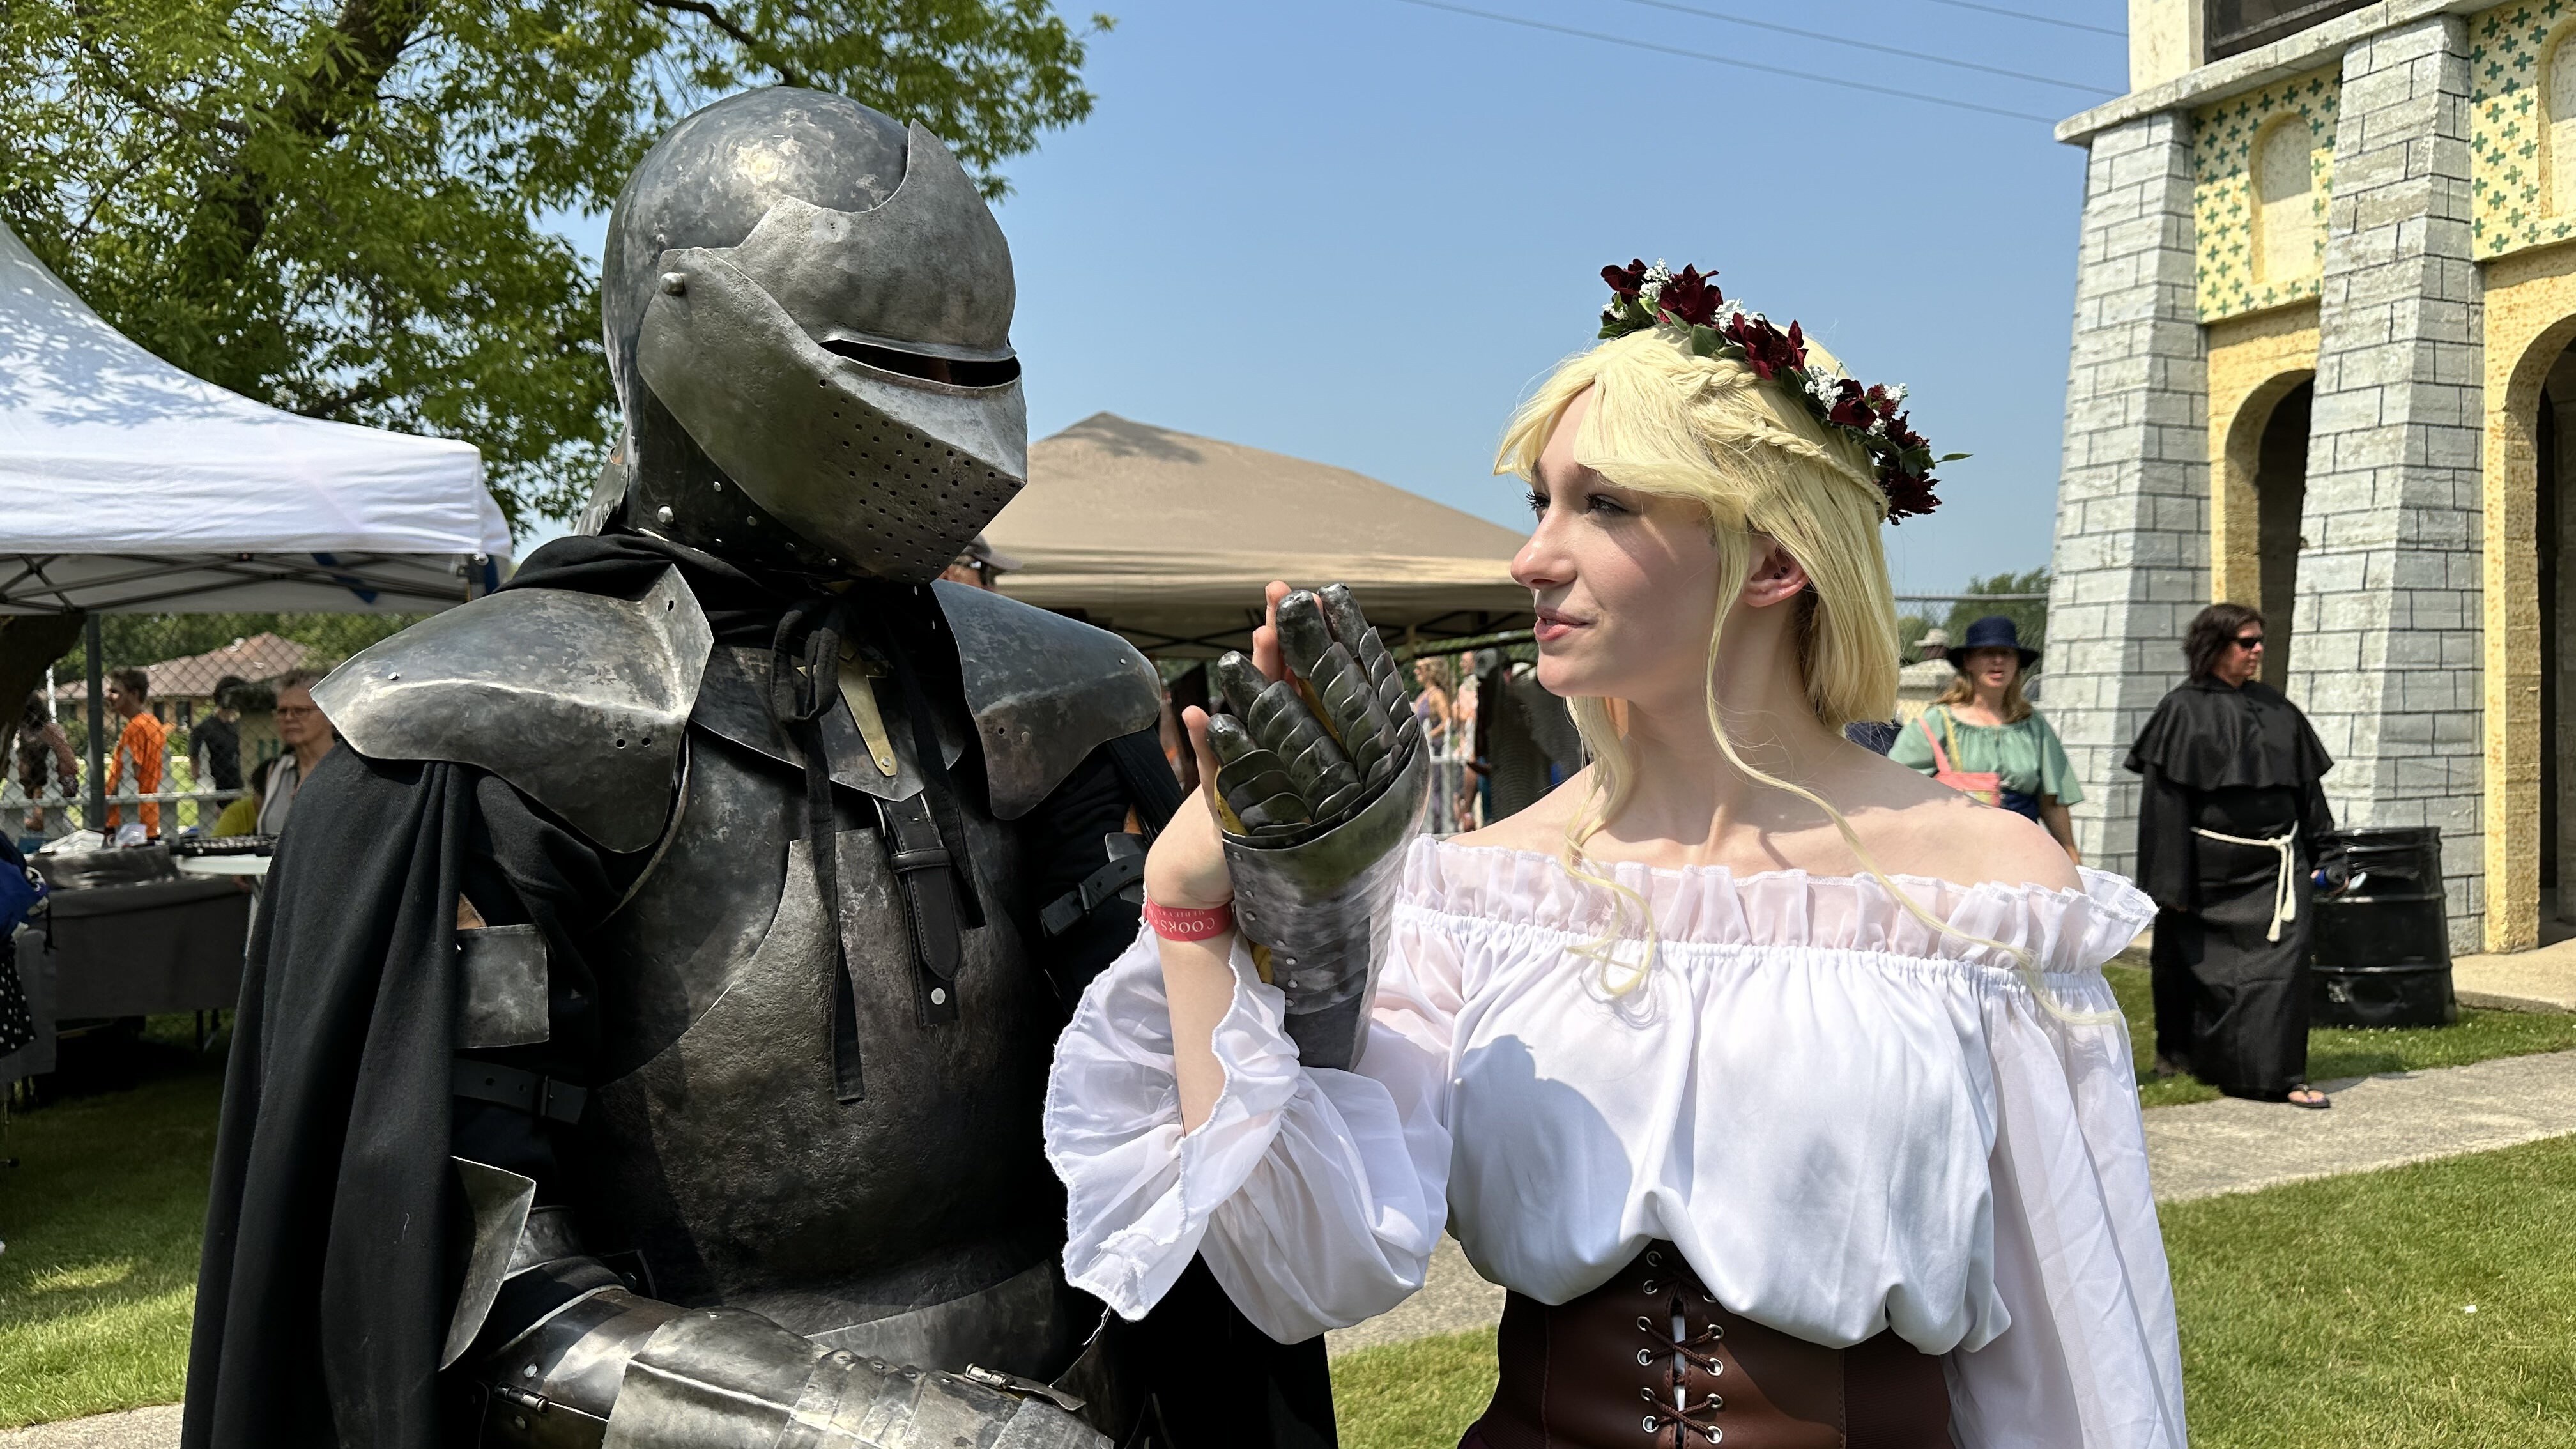 Hundreds kick-off medieval festival in Manitoba